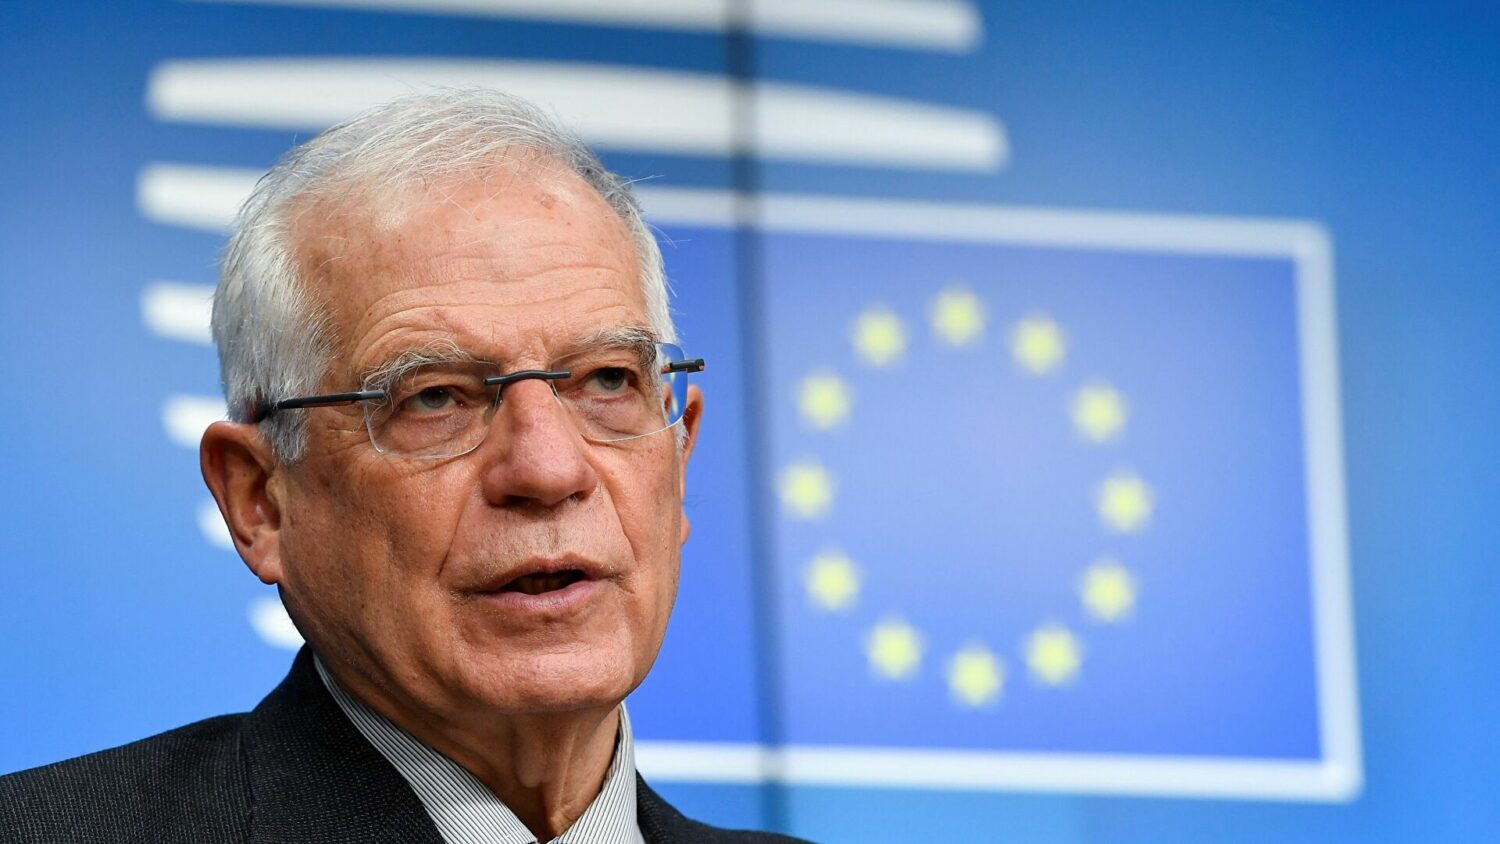 Ζοζέπ Μπορέλ: «Η Ευρωπαϊκή Ένωση δεν ενημερώθηκε» για το σχέδιο του συμφώνου ασφαλείας